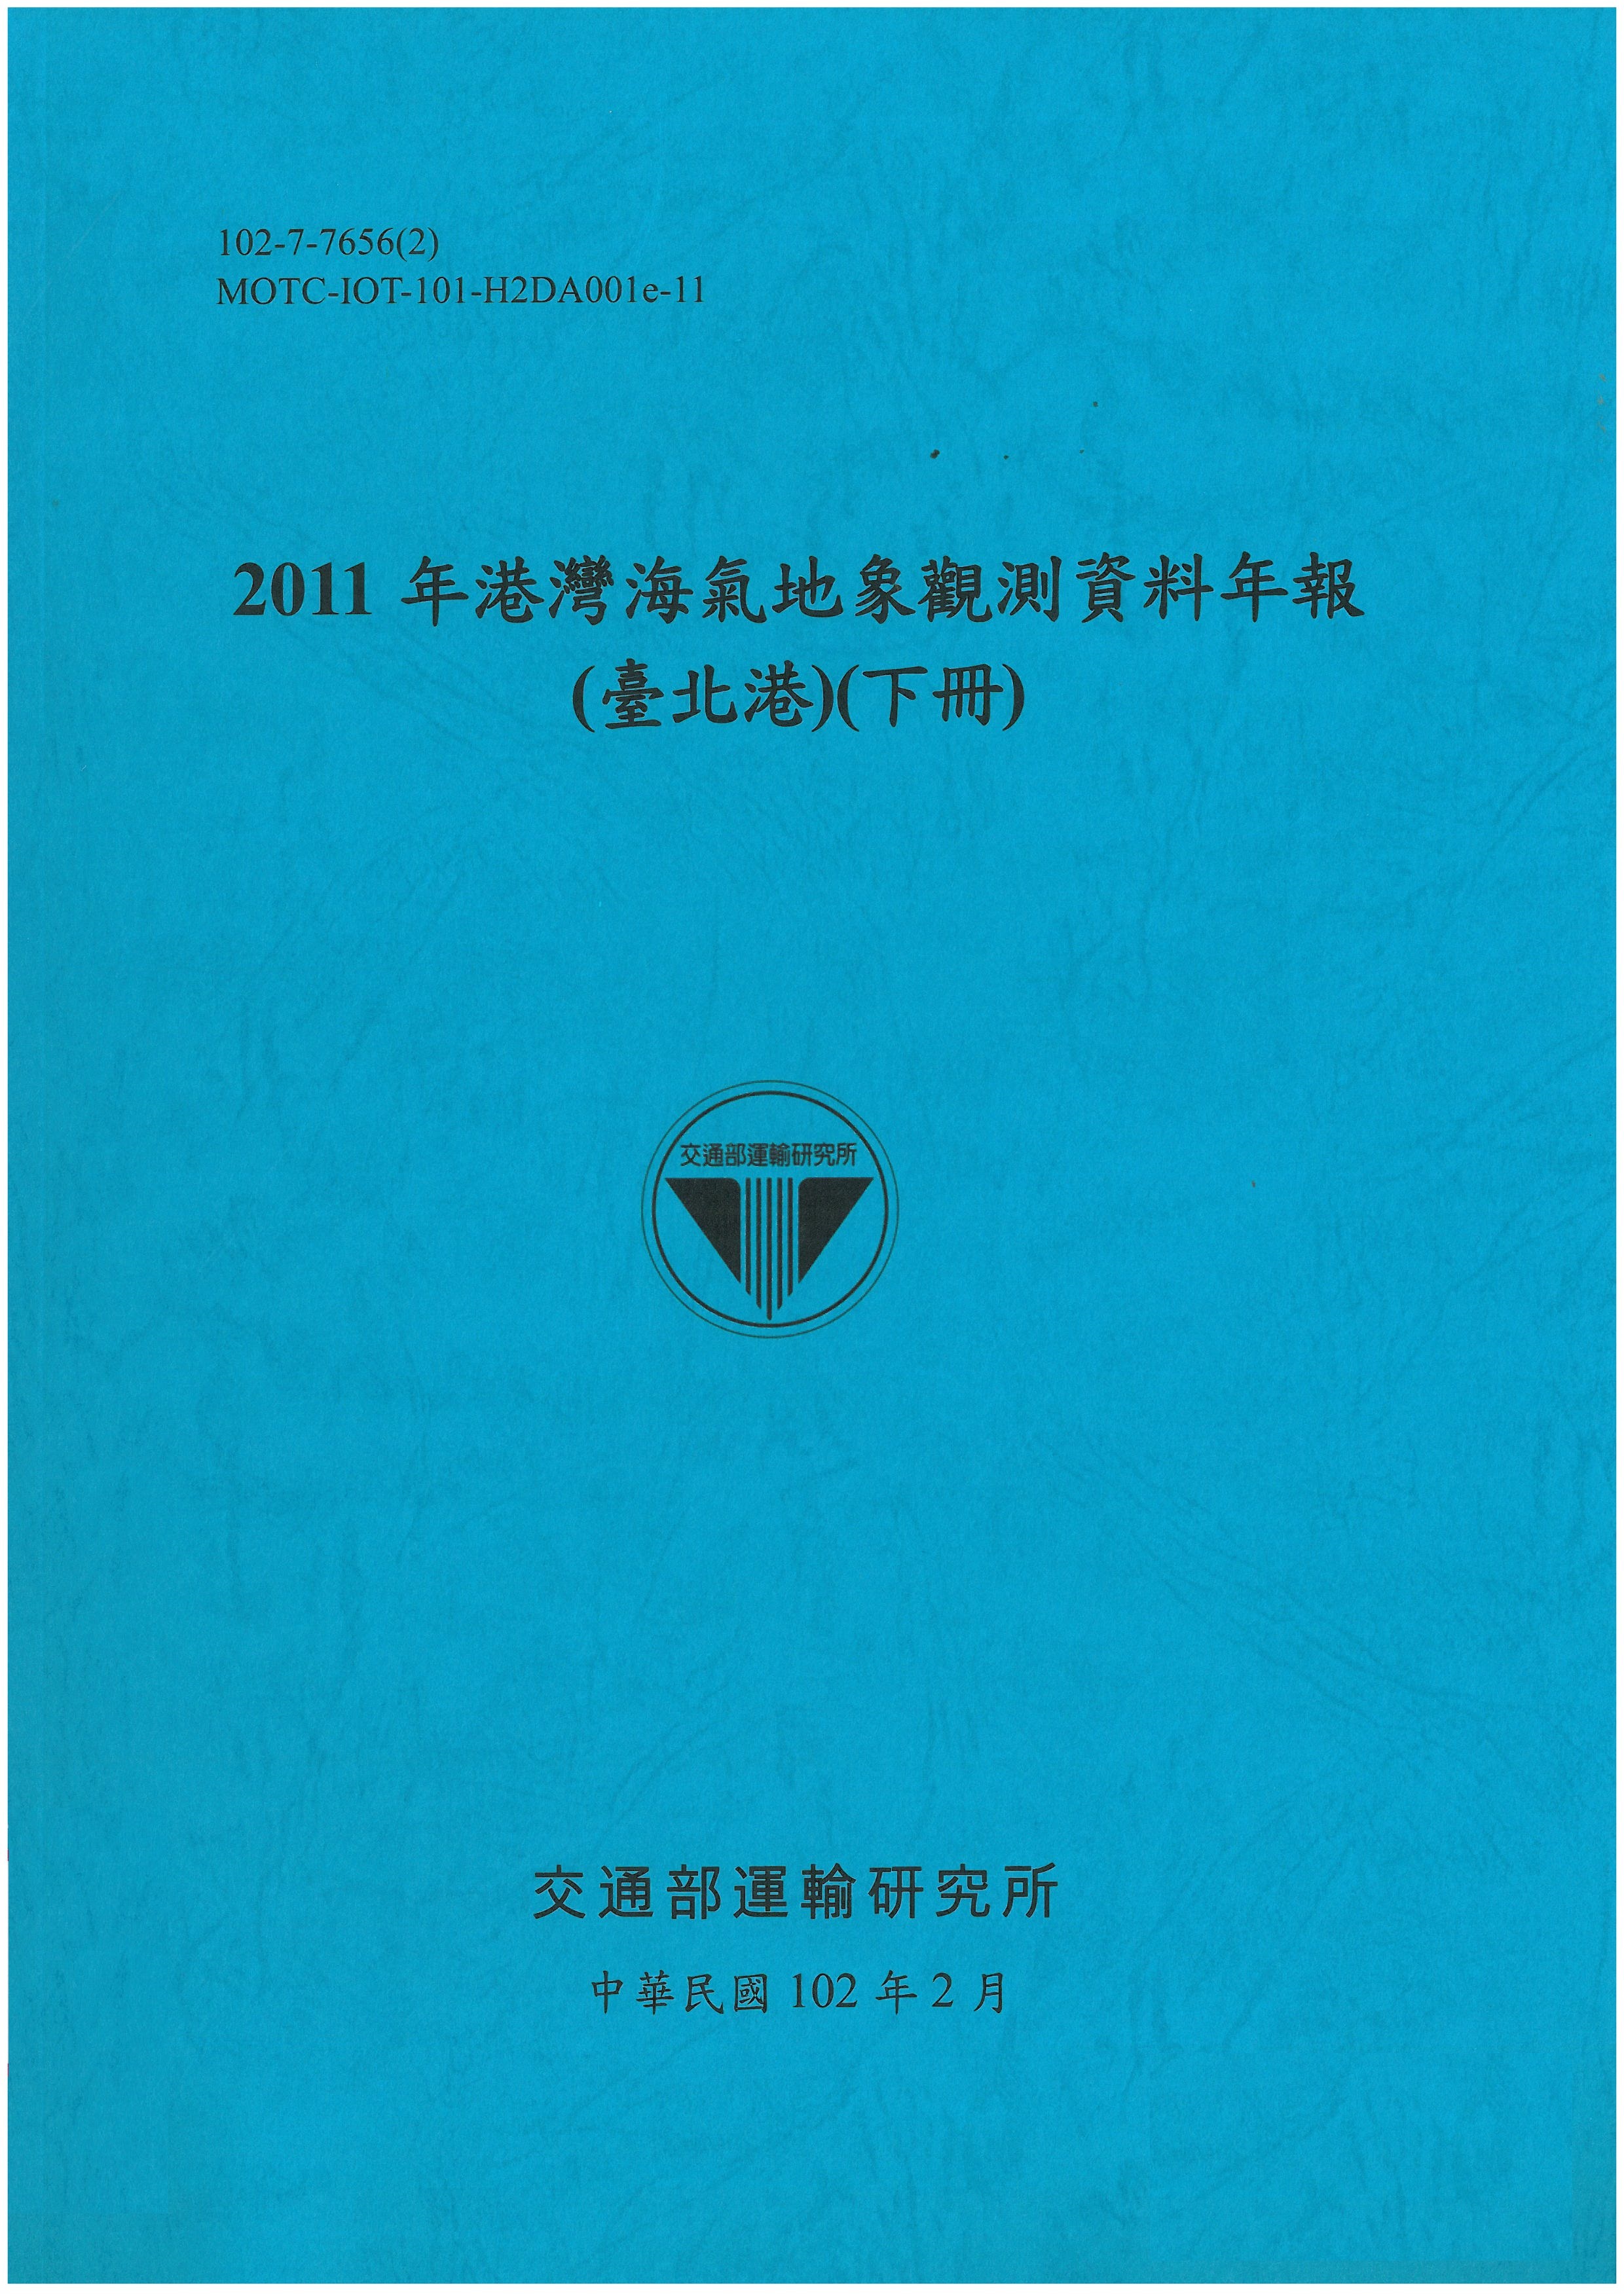 2011年港灣海氣地象觀測資料年報(臺北港)(下冊)